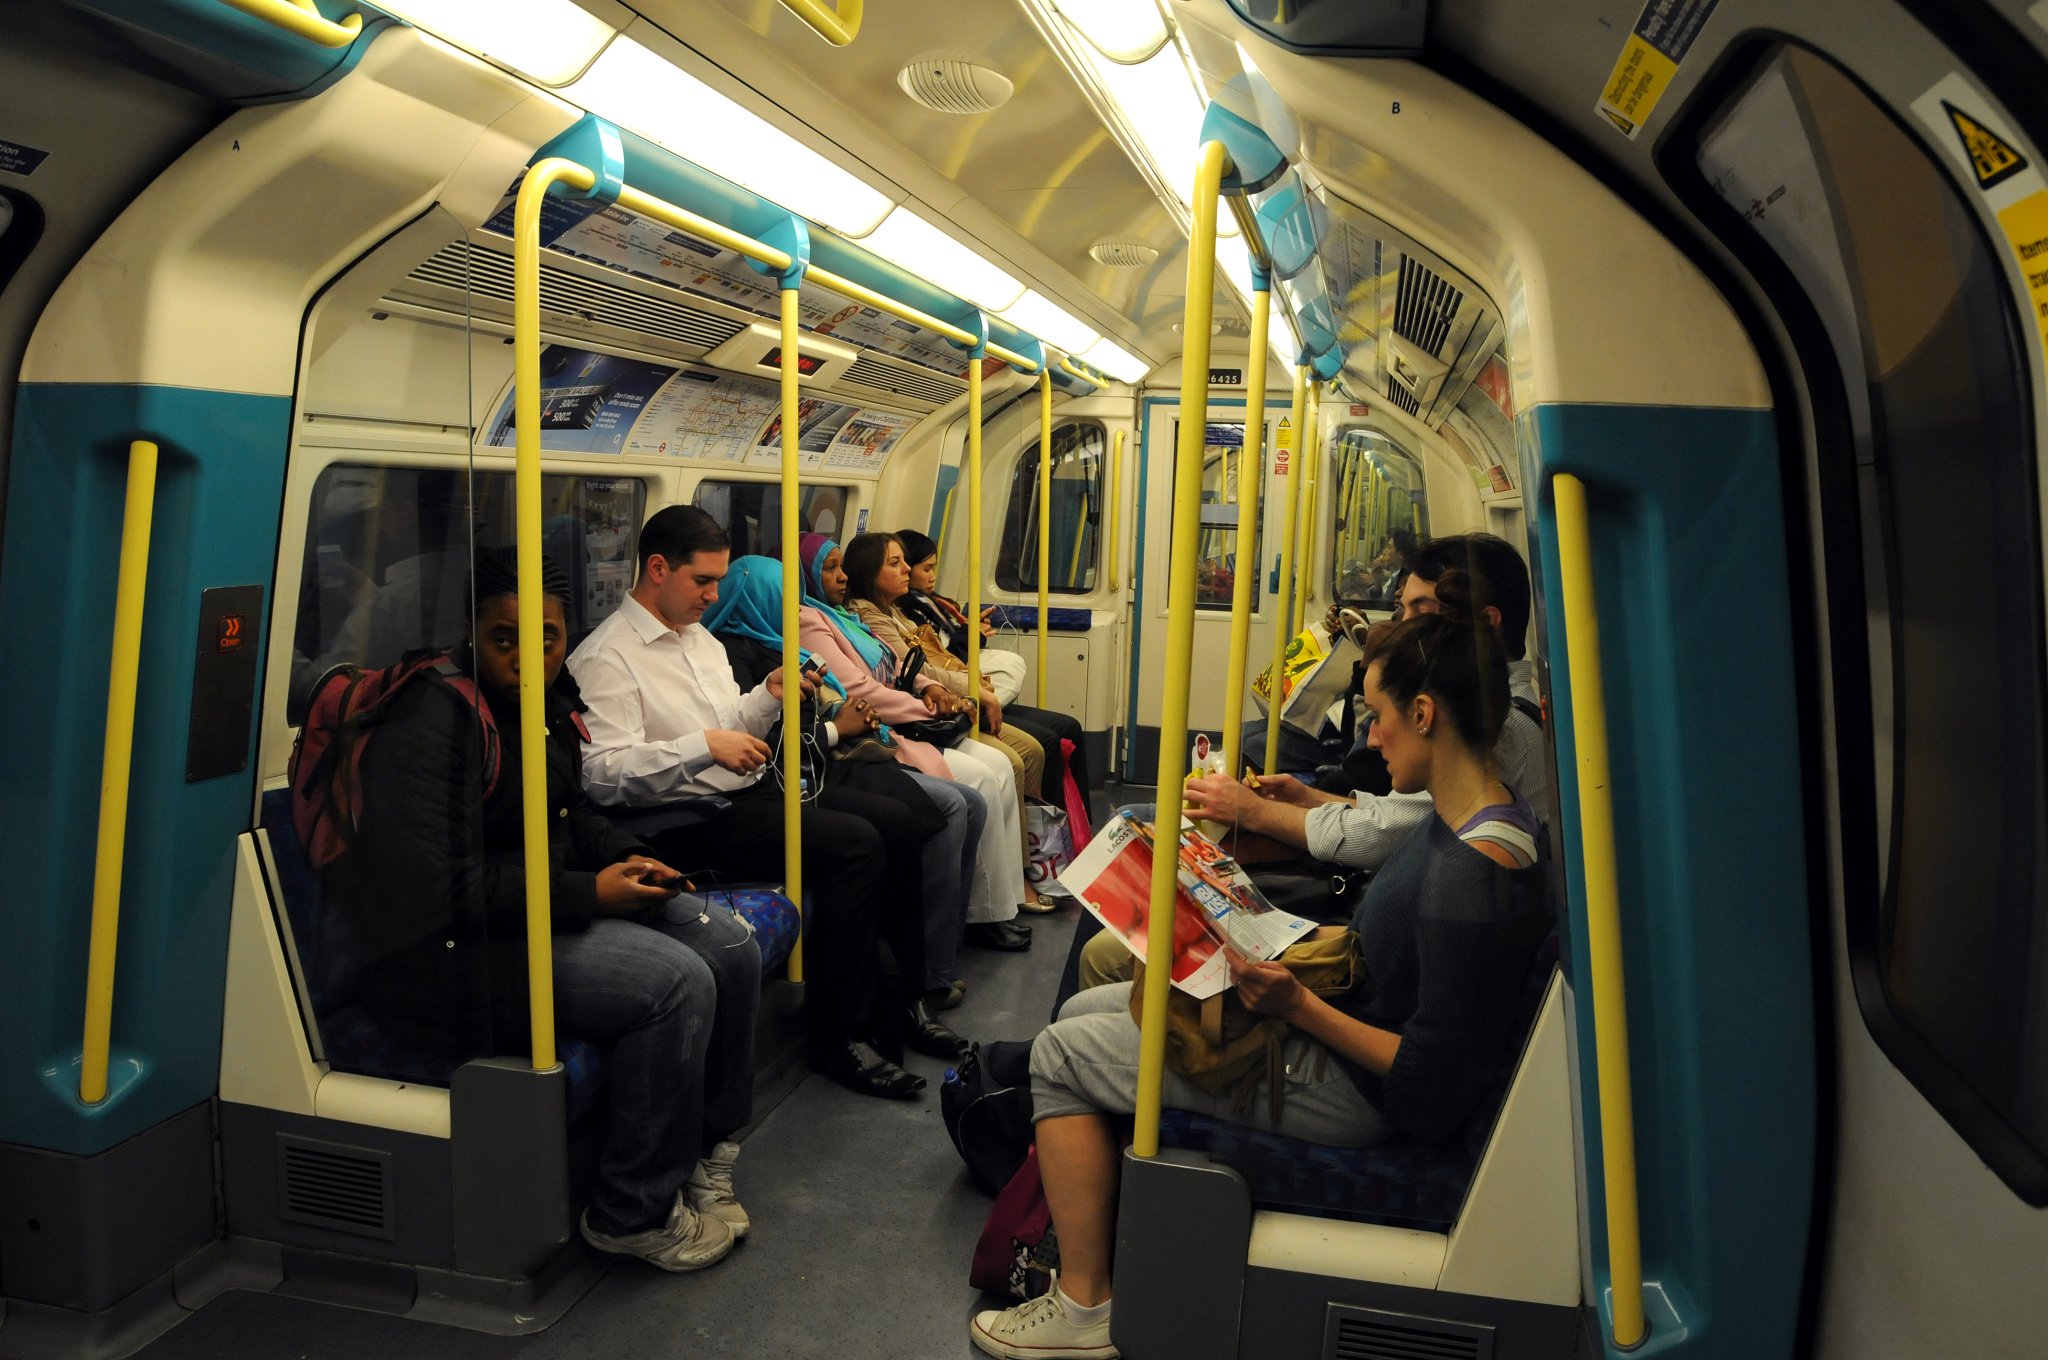 DSC_3391_1.jpg - Londýnské metro je nejstarší podzemní dráha na světě. První vlaky zde projely 10. ledna 1863 na lince Metropolitan Railway mezi stanicemi Paddington a Farringdon. První den bylo přepraveno 40 000 cestujících. Vlaky jezdily v odstupech 10 minut. V roce 1880 přepravilo metro 40 miliónů cestujících za rok. Brzy nato byly vybudovány další trasy a v roce 1884 byla dokončena celá trasa Circle Line.